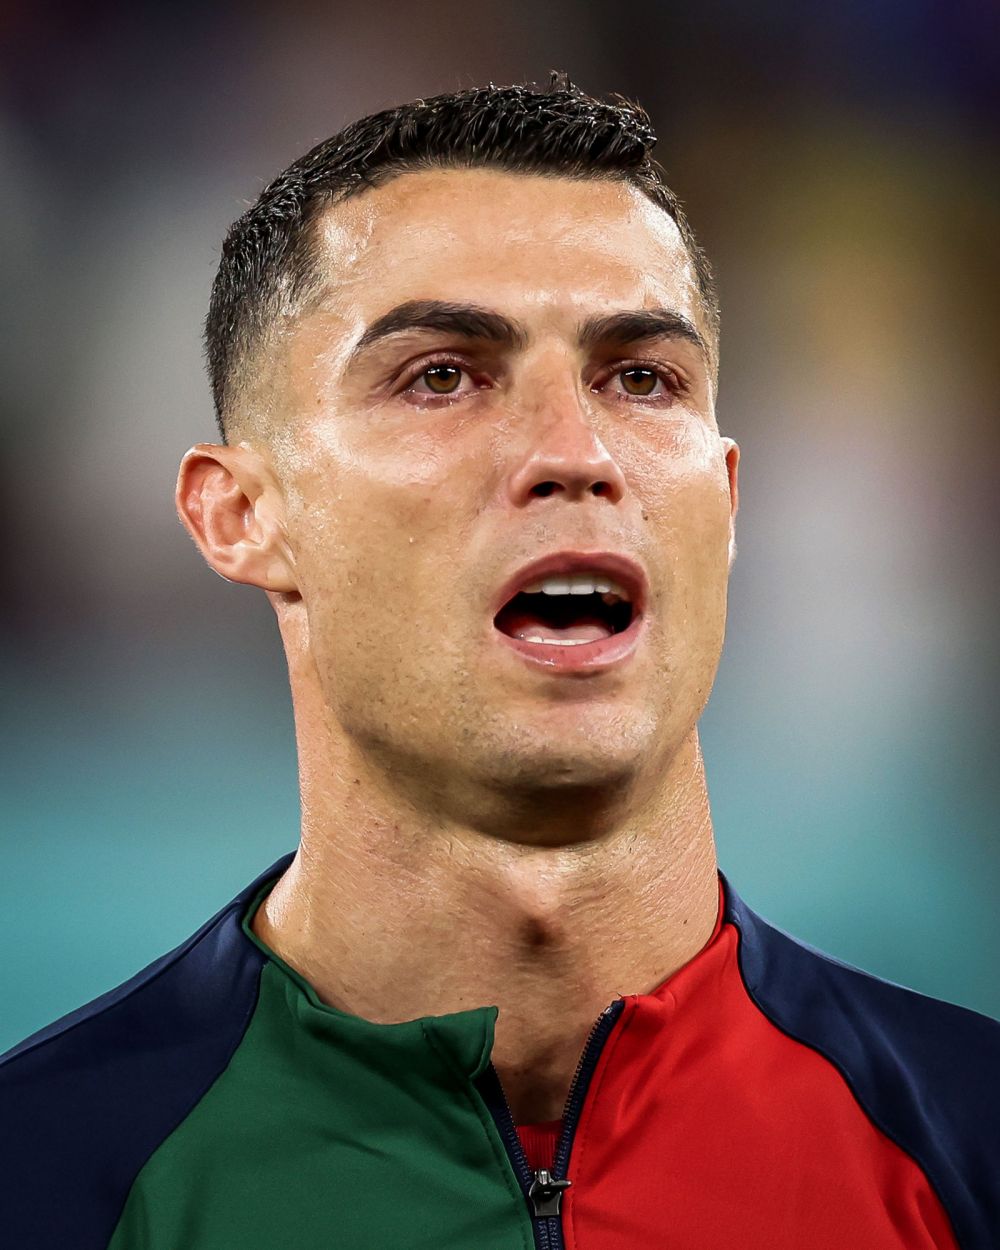 Imagini emoționante! Cristiano Ronaldo a început Campionatul Mondial din Qatar așa cum l-a sfârșit: plângând _22